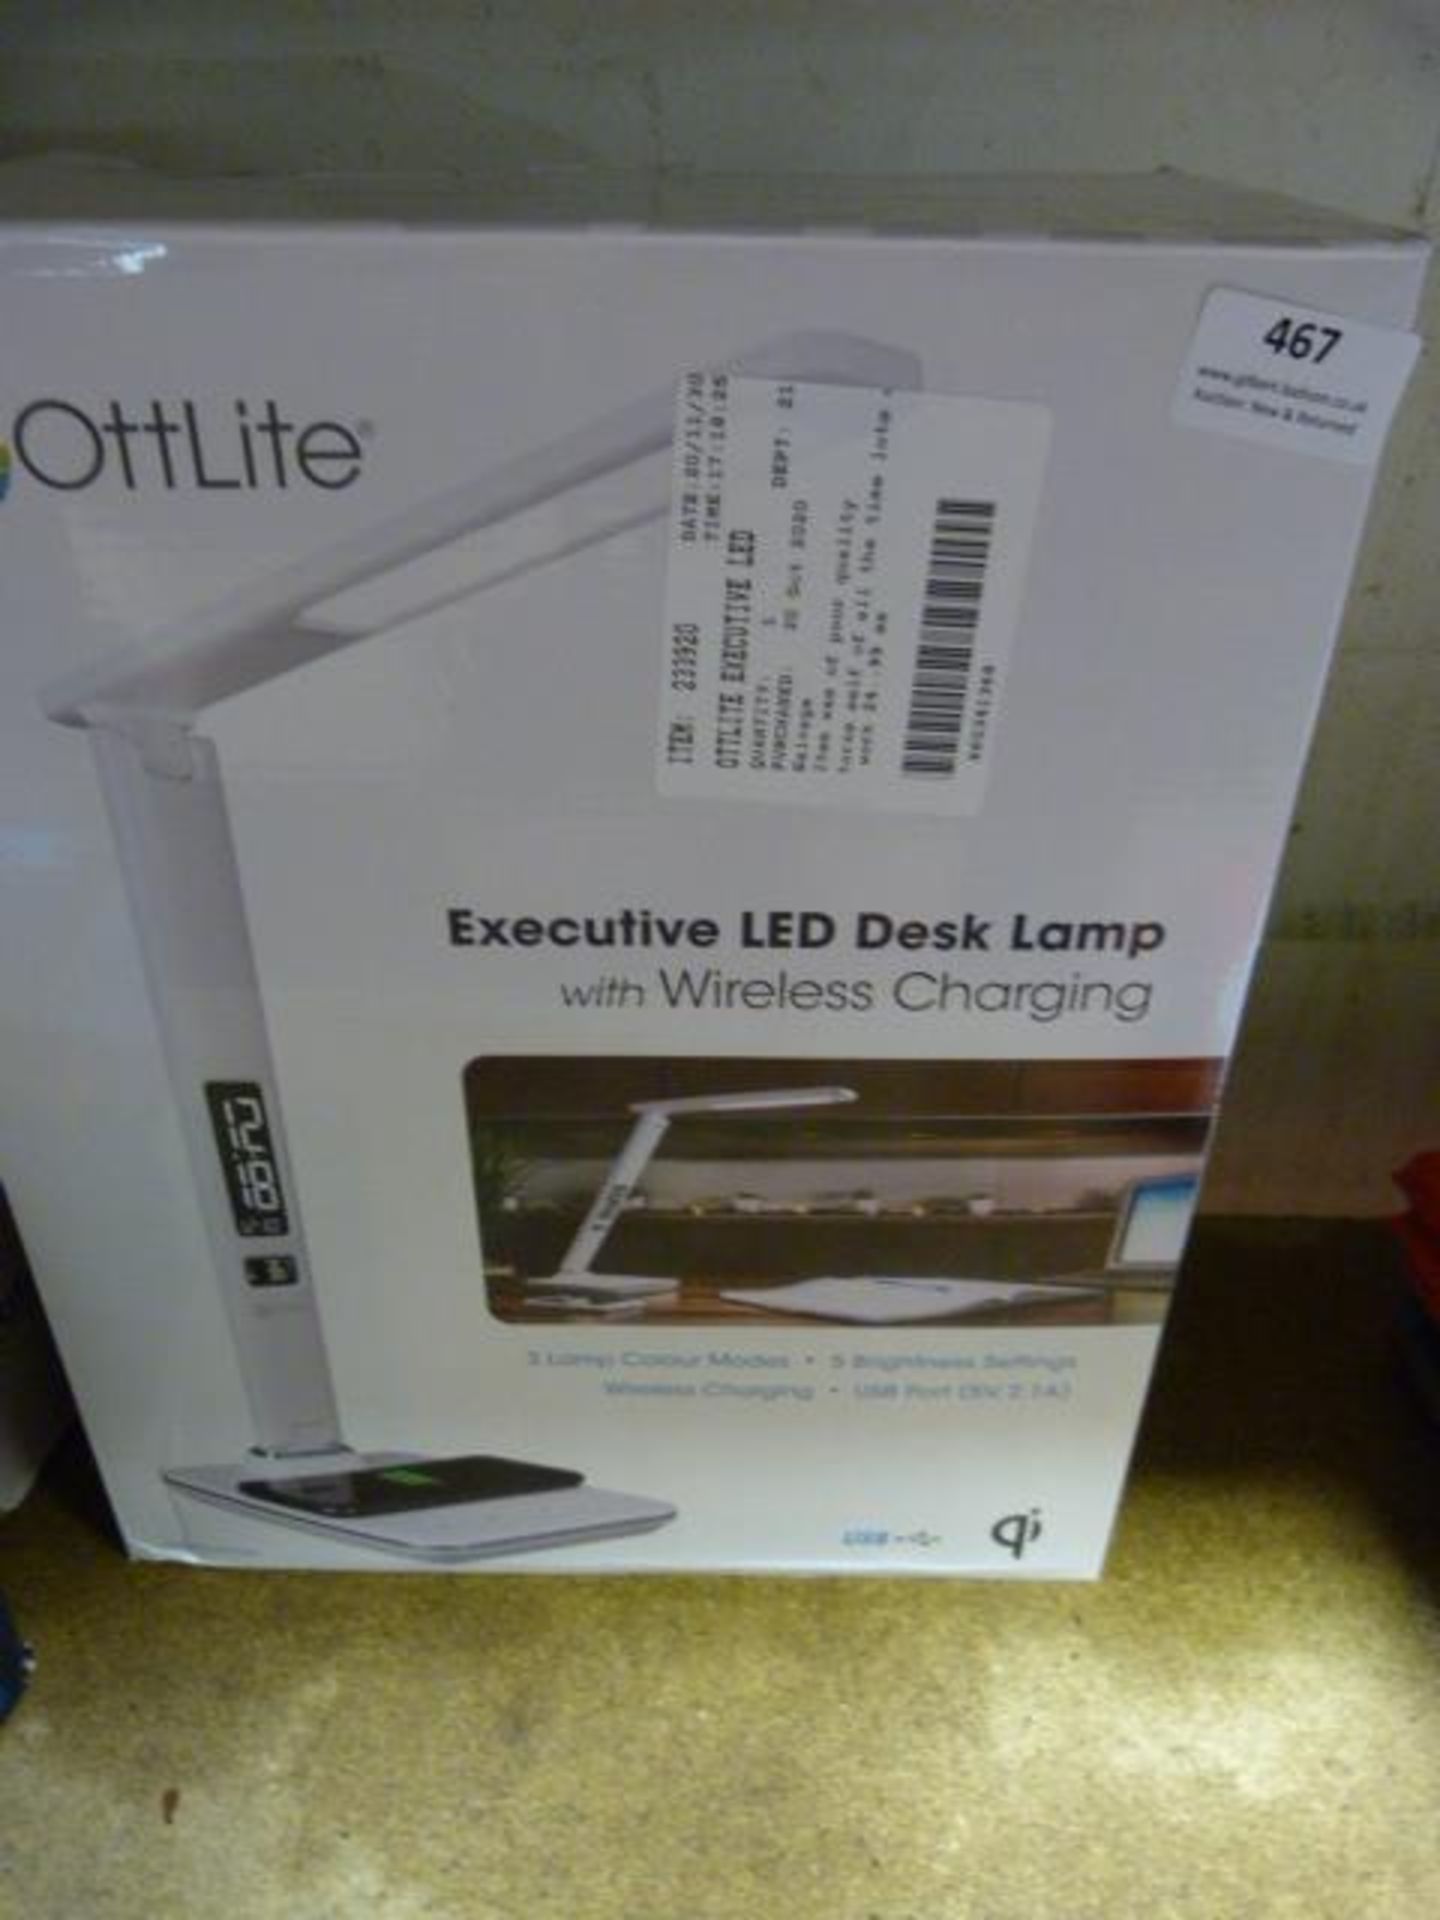 *Ottlite Executive LED Desk Lamp